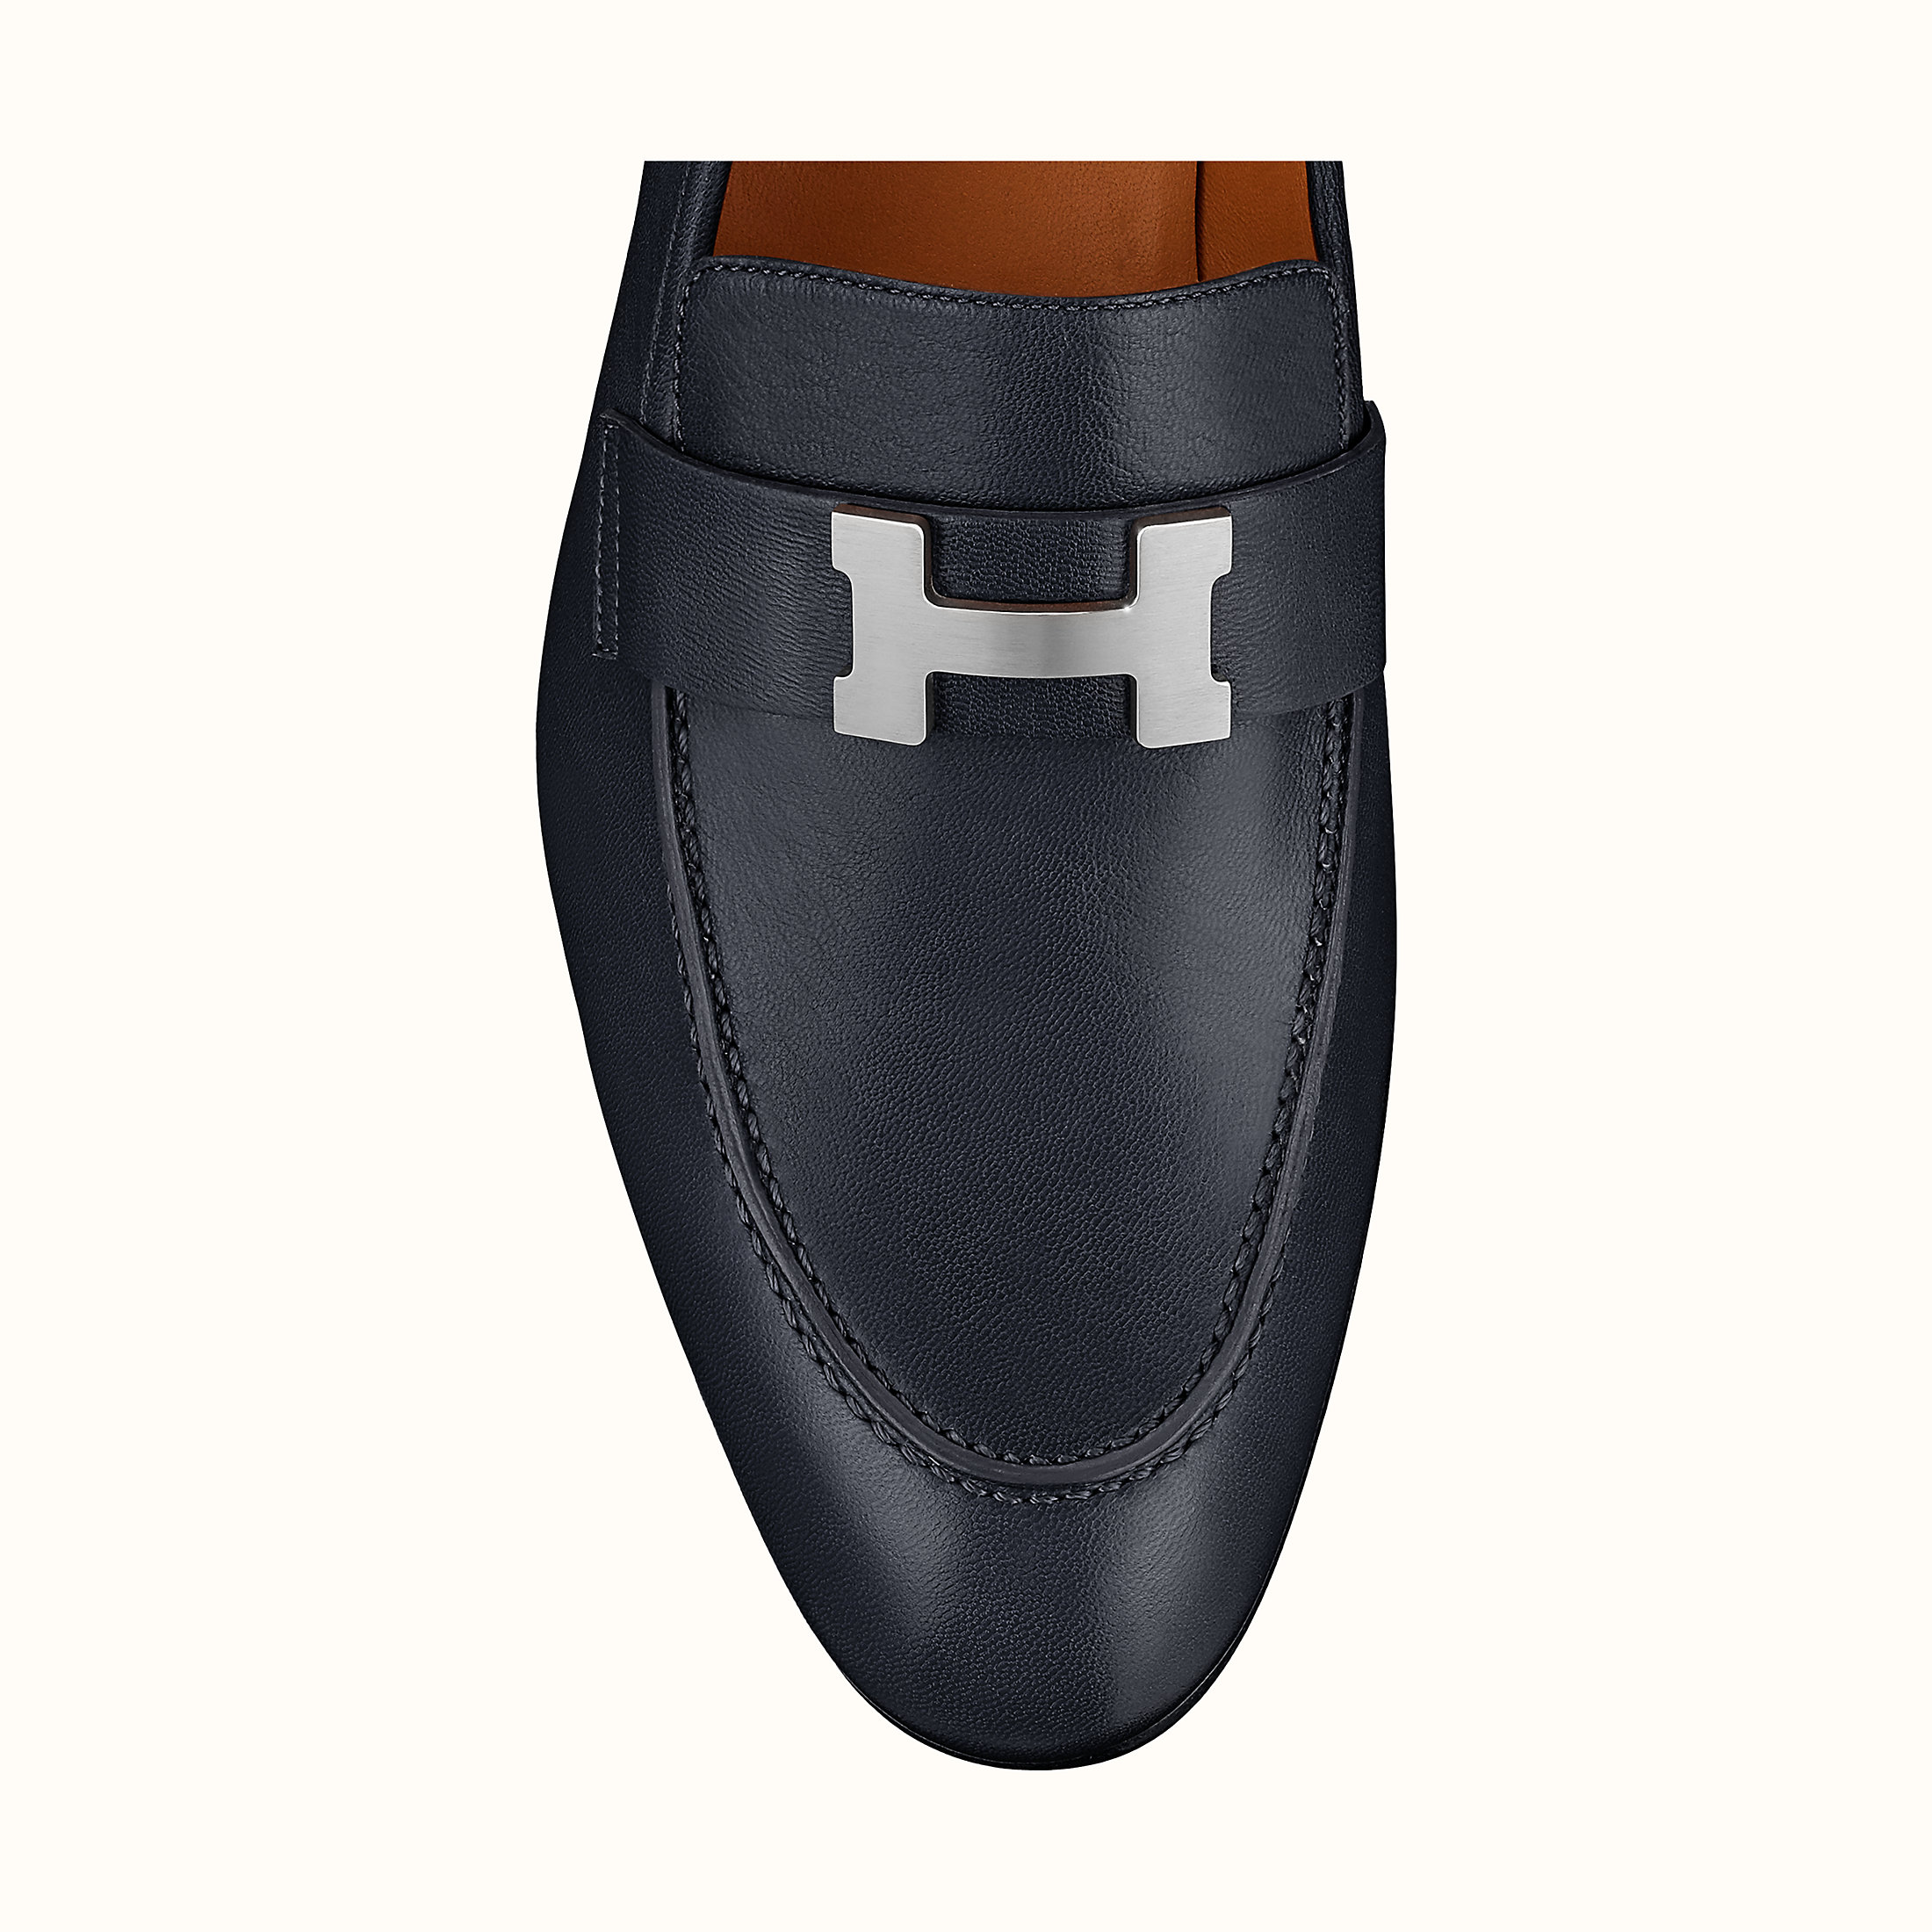 รองเท้า Hermès ผู้ชาย มีราคา เท่าไร ใน Shop ไทย มาเช็กราคากัน — Beverly O